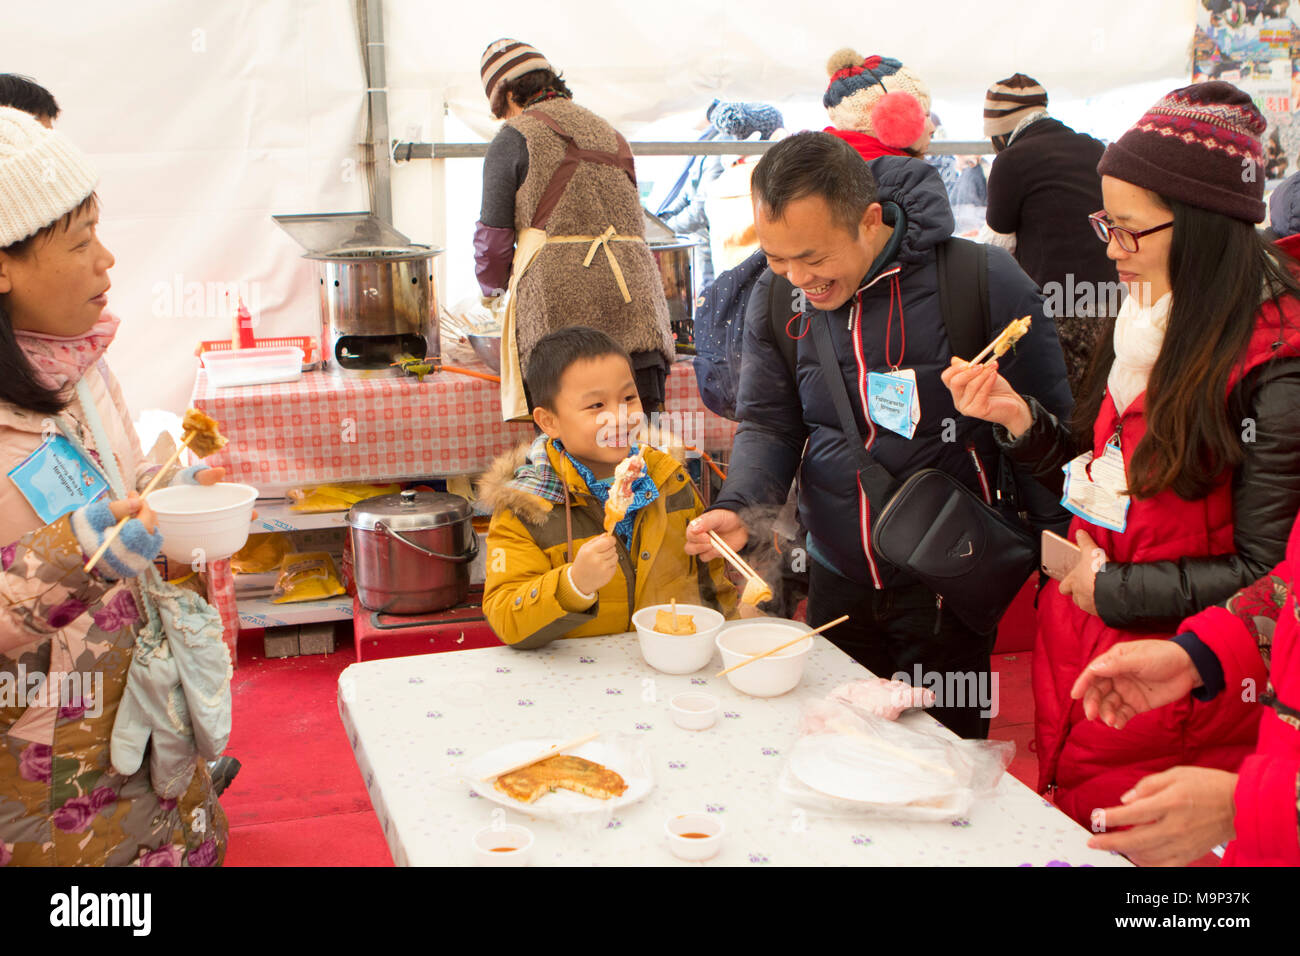 Eine asiatische Familie befindet sich in der Aufwärmphase in einem Zelt, Essen winter Snacks Die Hwacheon Sancheoneo Ice Festival ist eine Tradition für die Menschen in Korea. Jedes Jahr im Januar Menschenmassen versammeln sich auf dem zugefrorenen Fluss der Kälte und dem Schnee des Winters zu feiern. Hauptattraktion ist Eisfischen. Jung und Alt warten geduldig auf ein kleines Loch im Eis für eine Forelle zu beißen. In zelten Sie können den Fisch vom Grill, nach dem sie gegessen werden. Unter anderem sind Rodeln und Eislaufen. Die in der Nähe Pyeongchang Region wird Gastgeber der Olympischen Winterspiele im Februar 2018. Stockfoto